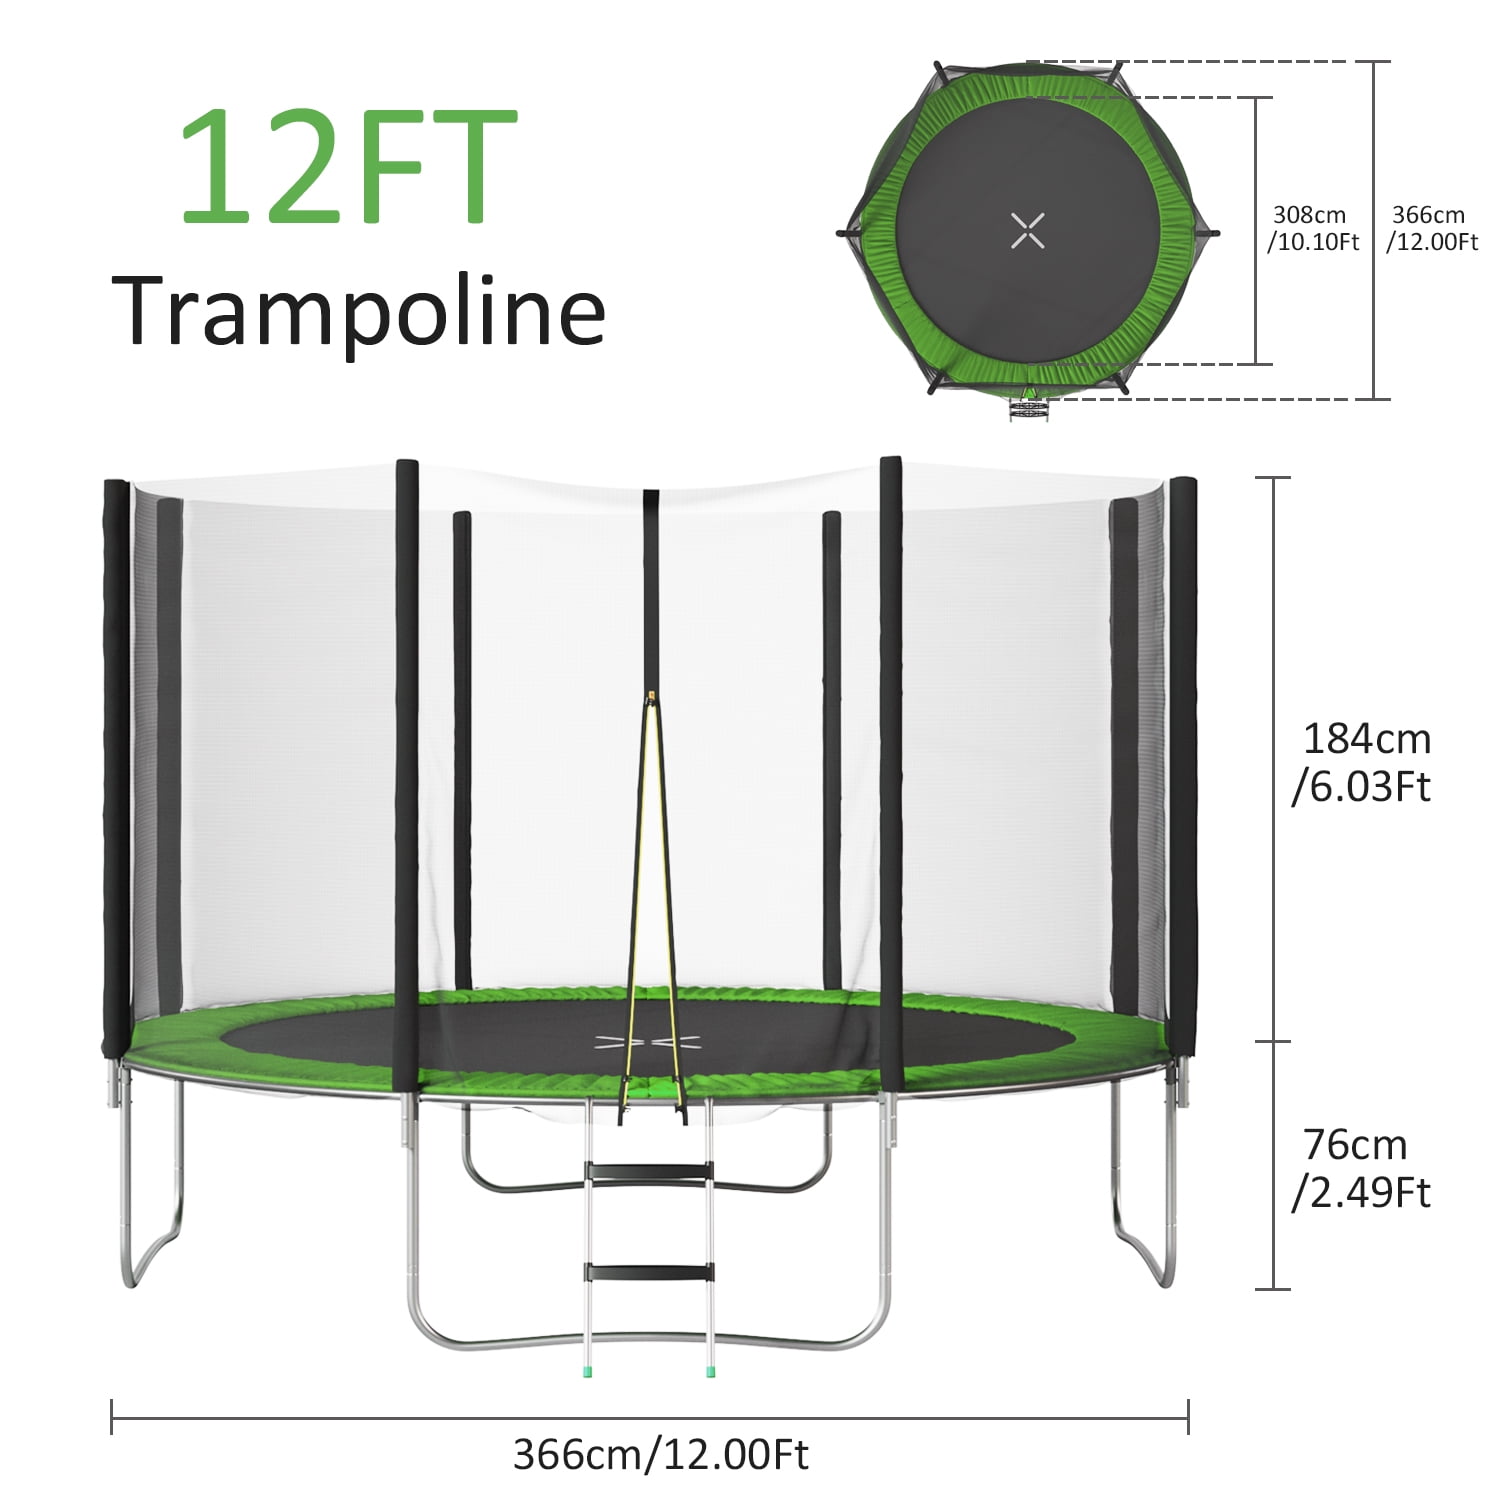 erklære Lover utilsigtet hændelse Devoko 12 ft Trampoline with Safe Enclosure Net Patio Fitness Jumping  Trampoline for Backyard, Green - Walmart.com